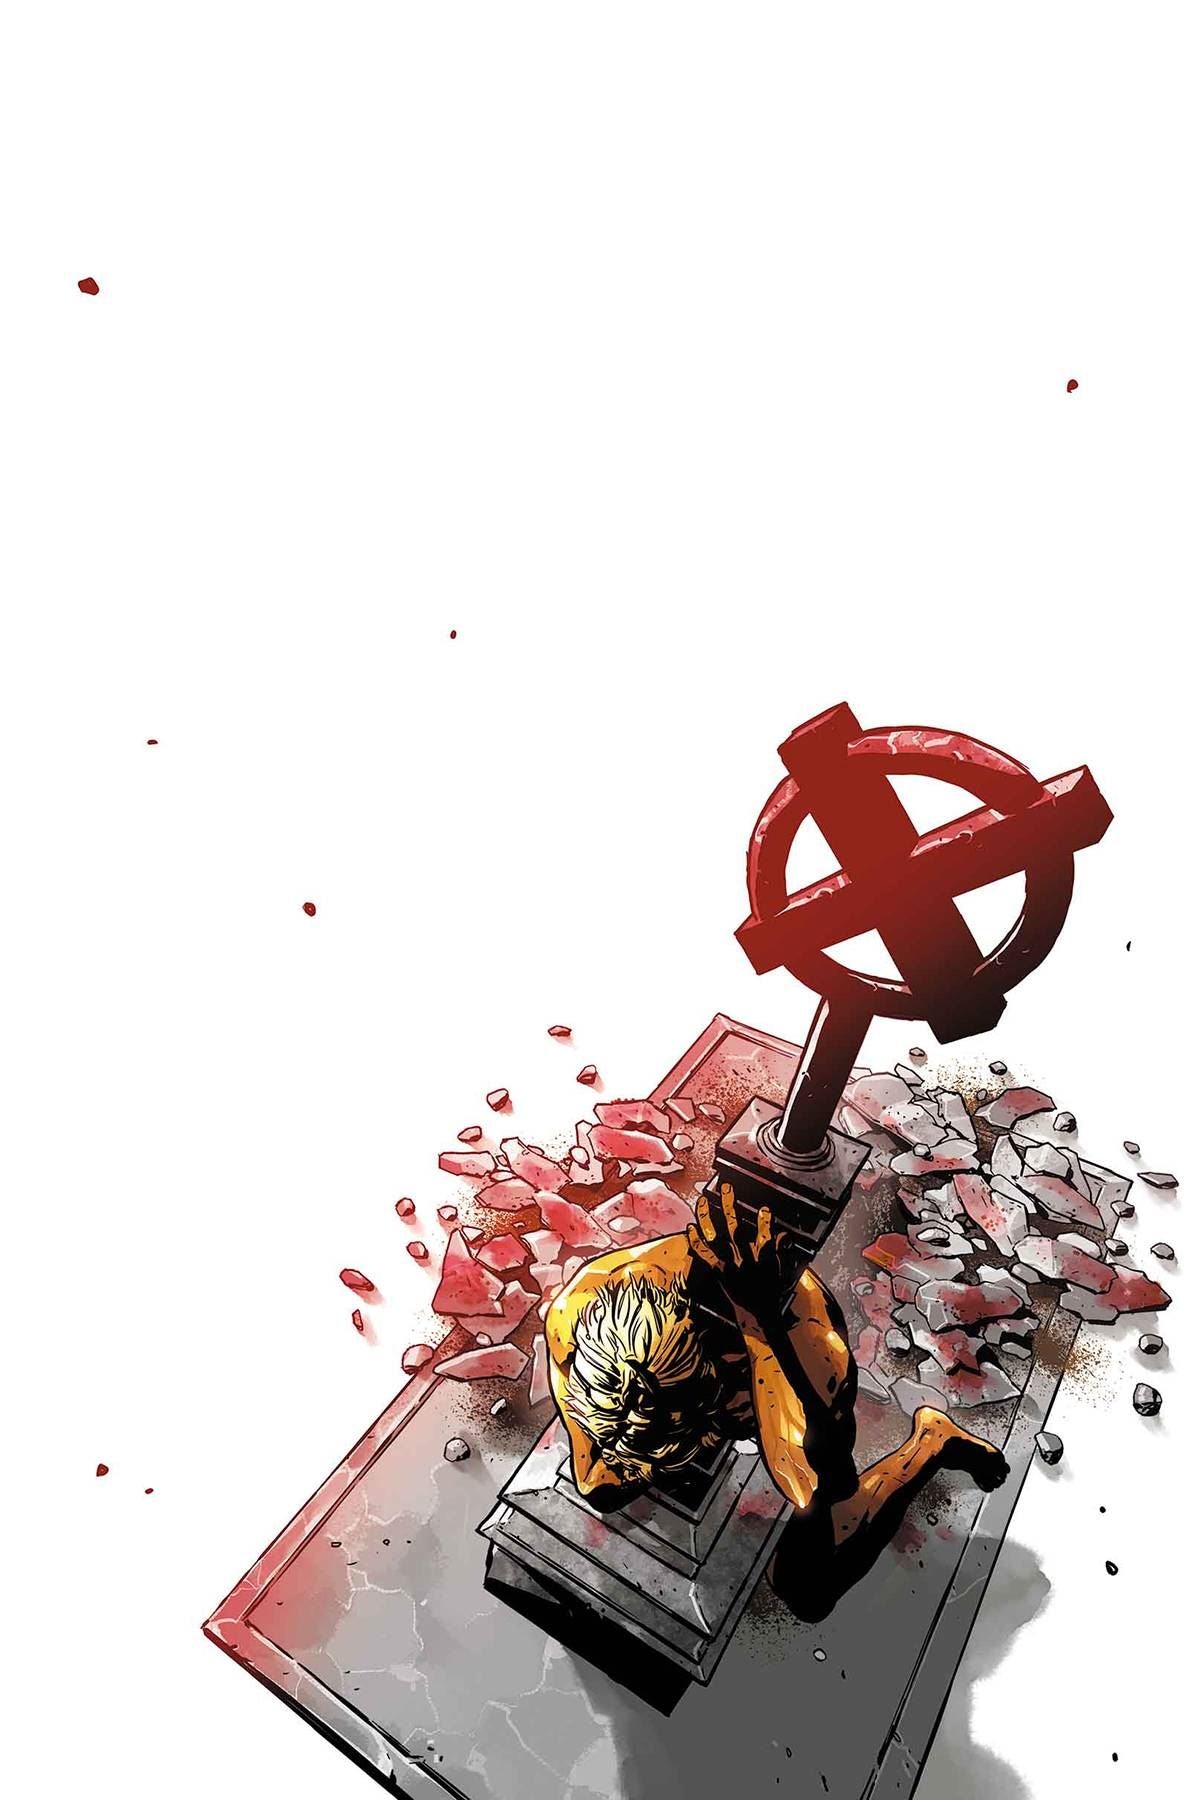 Uncanny X-men Annual #1 () Marvel Comics Comic Book